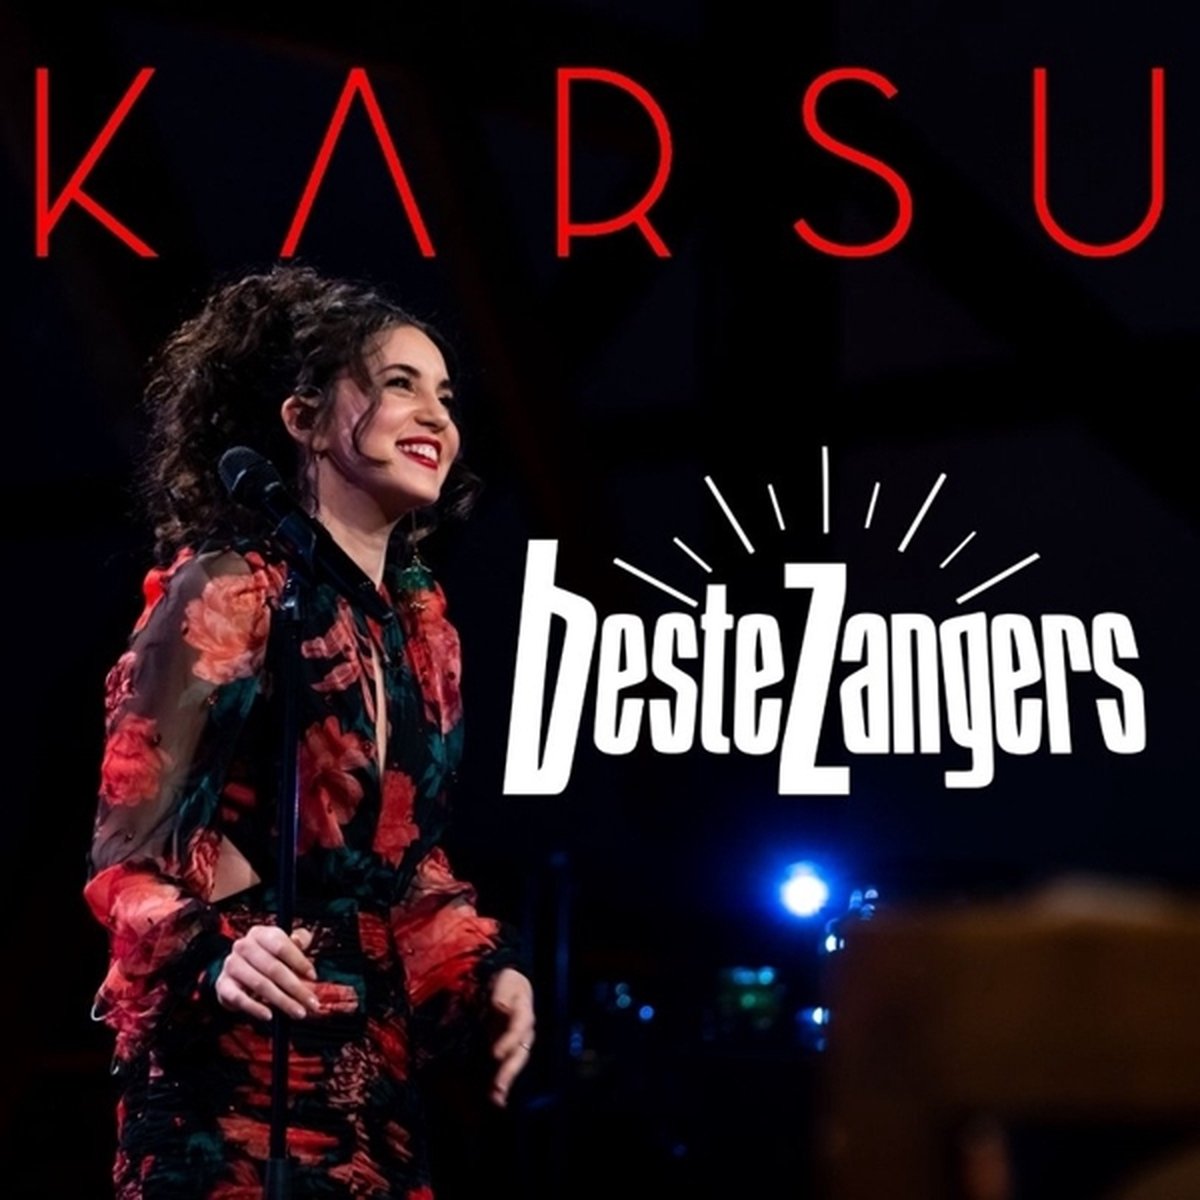 Karsu - Beste Zangers (CD) - Karsu